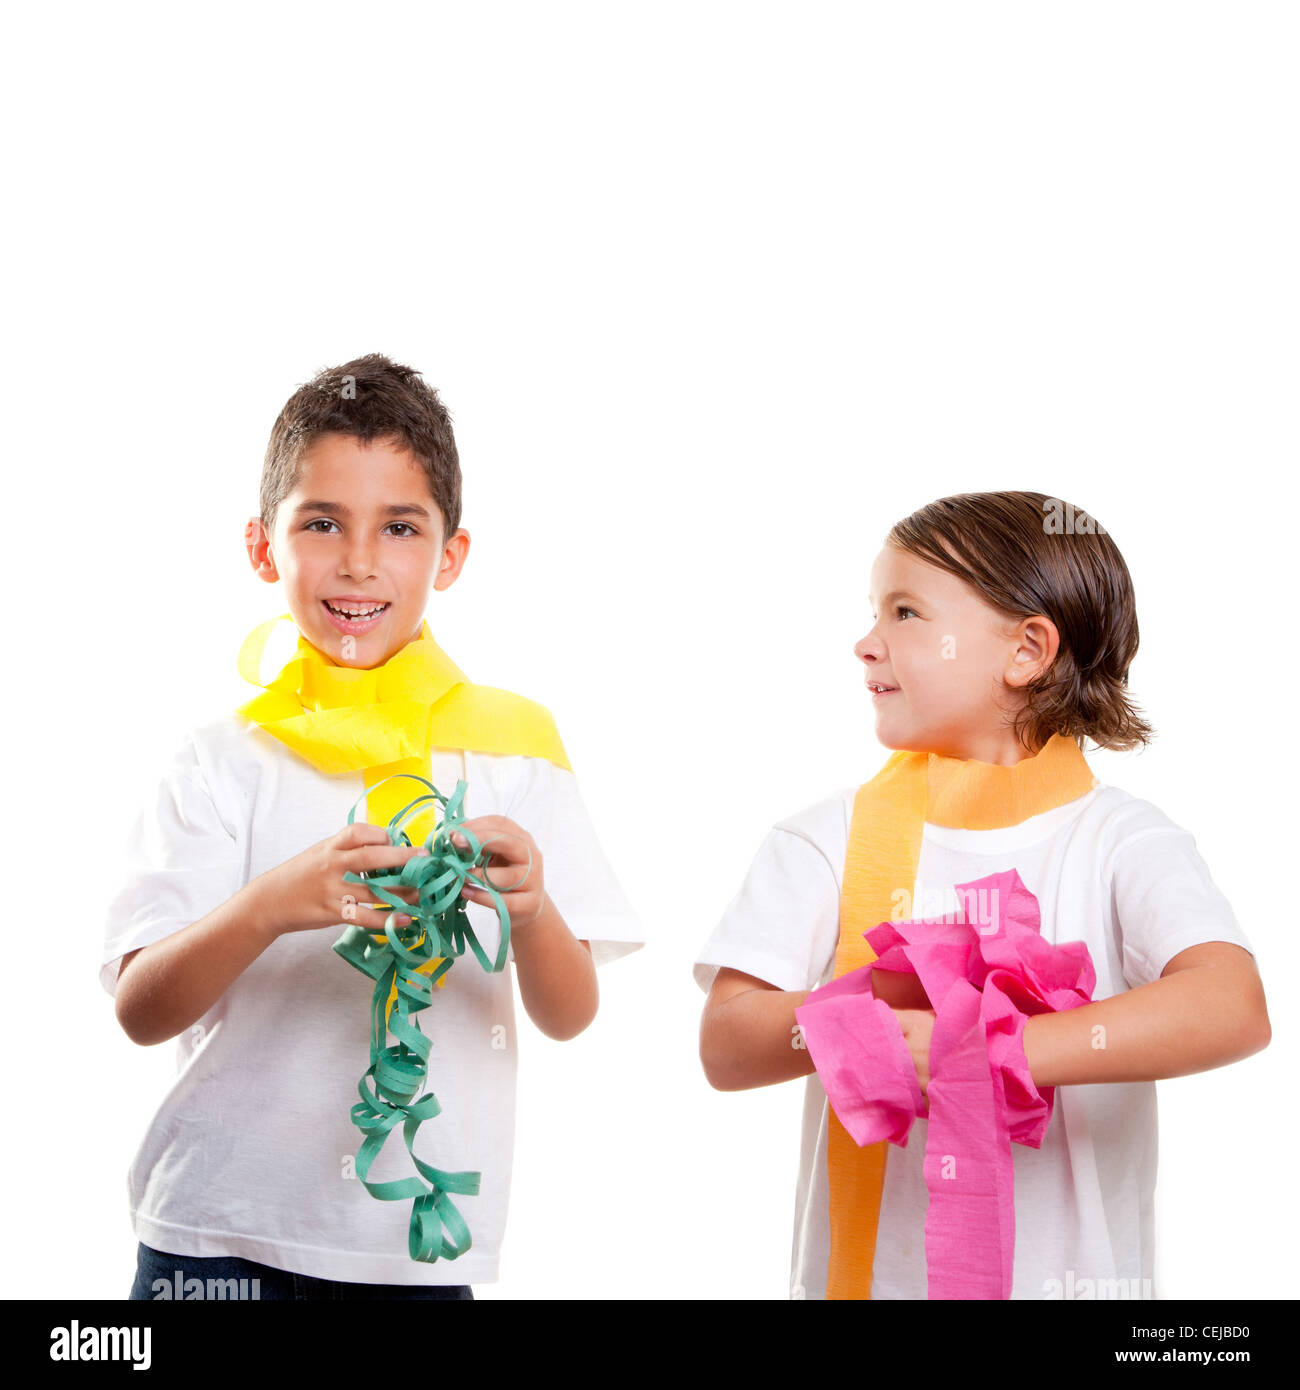 Due bambini i bambini in un partito con il disordine colorato del nastro di carta Foto Stock